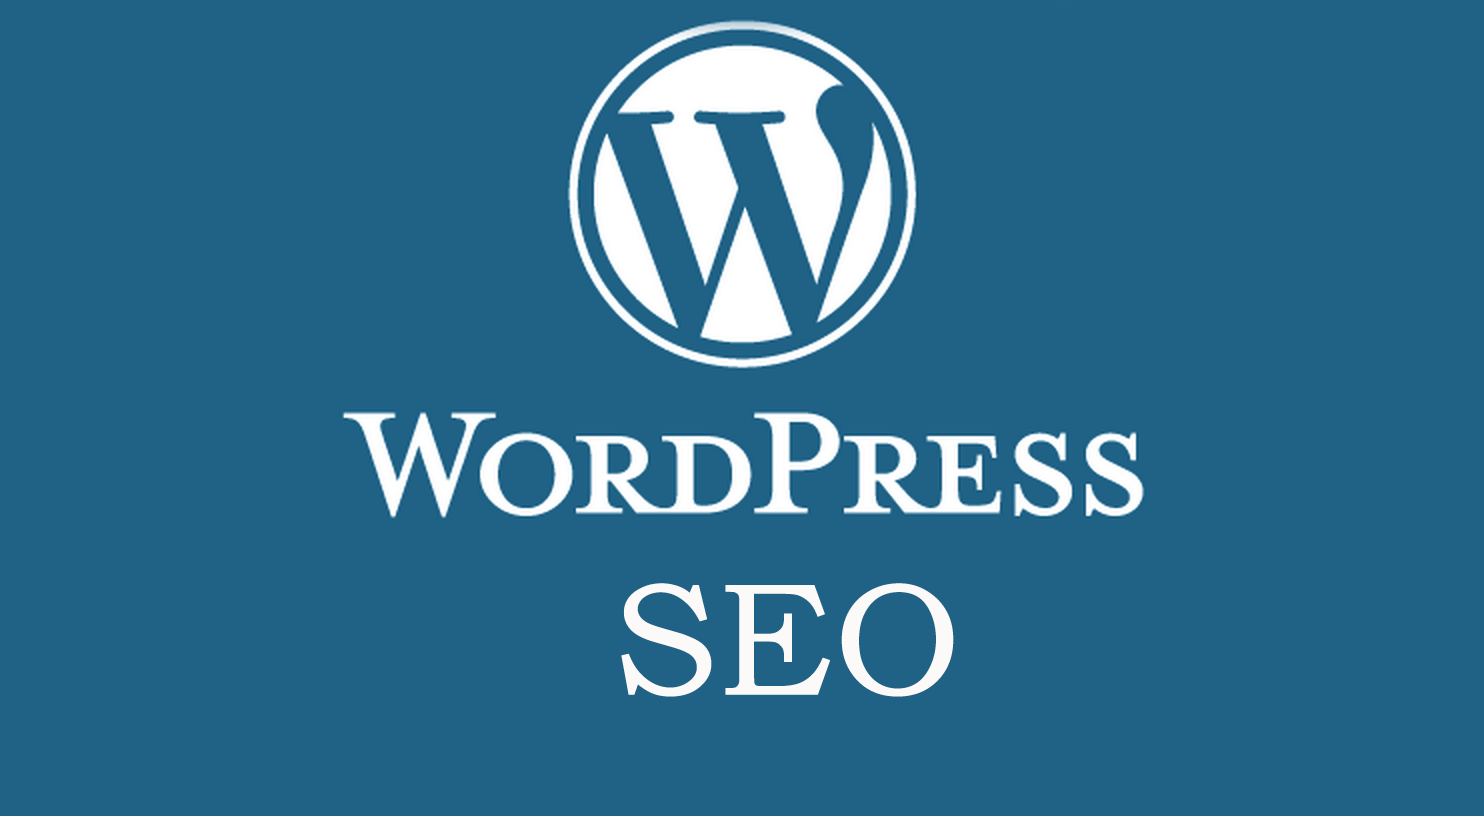 Wordpress your. Вордпресс. Вордпресс лого. Сео вордпресс. WORDPRESS логотип.